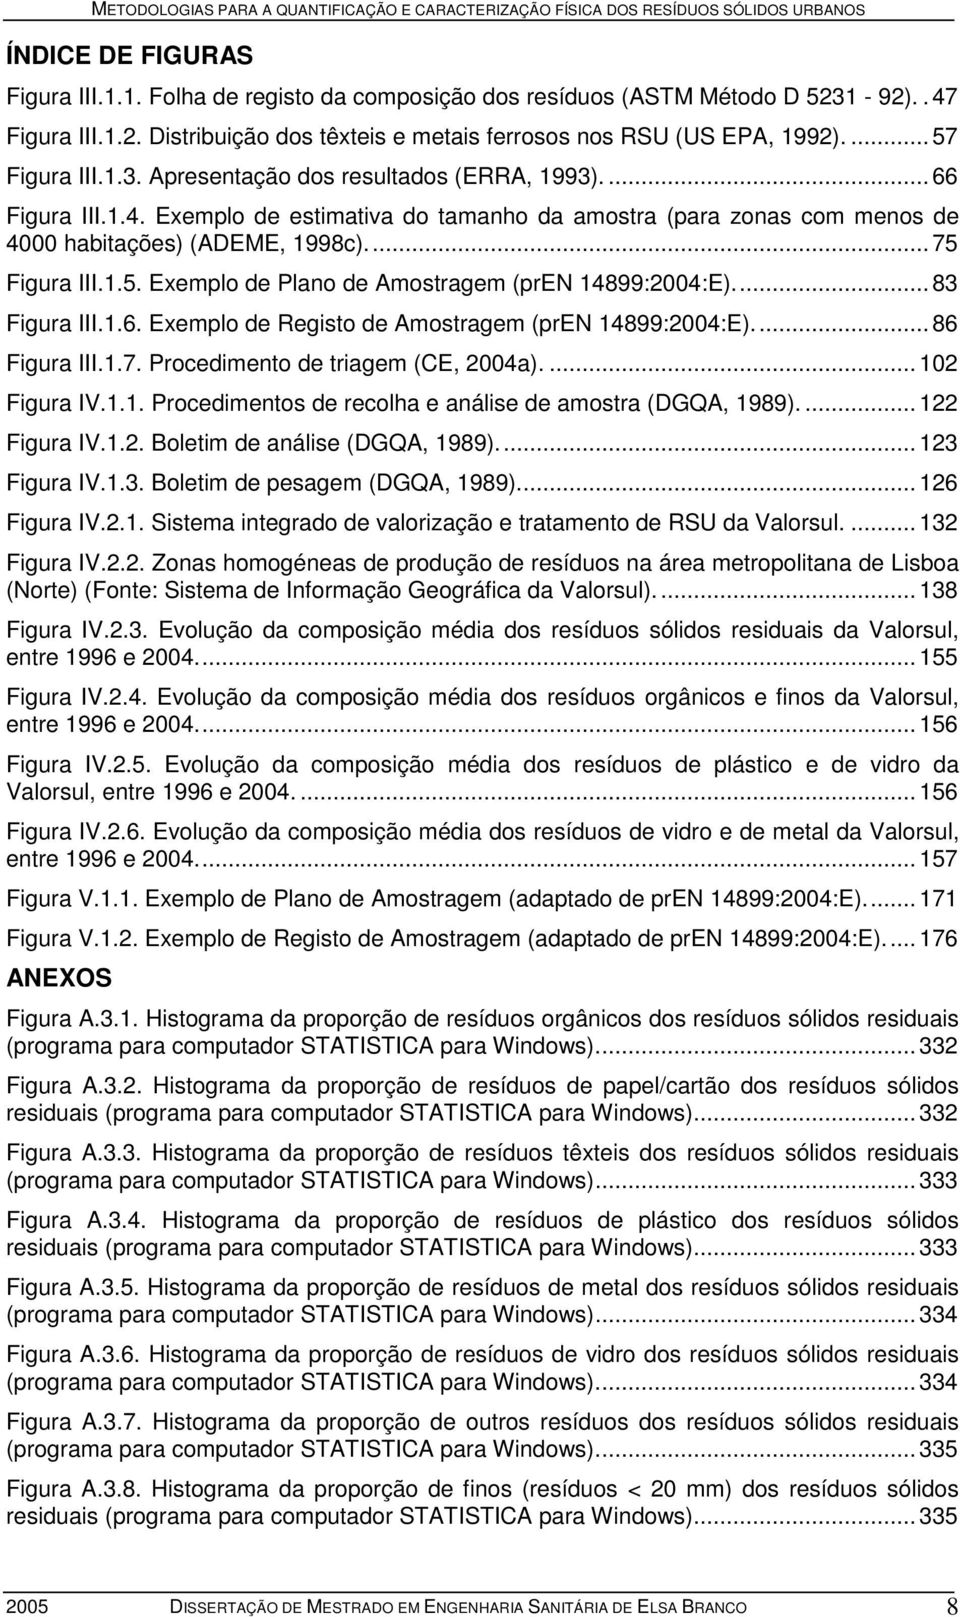 1.5. Exemplo de Plano de Amostragem (pren 14899:2004:E)...83 Figura III.1.6. Exemplo de Registo de Amostragem (pren 14899:2004:E)...86 Figura III.1.7. Procedimento de triagem (CE, 2004a).